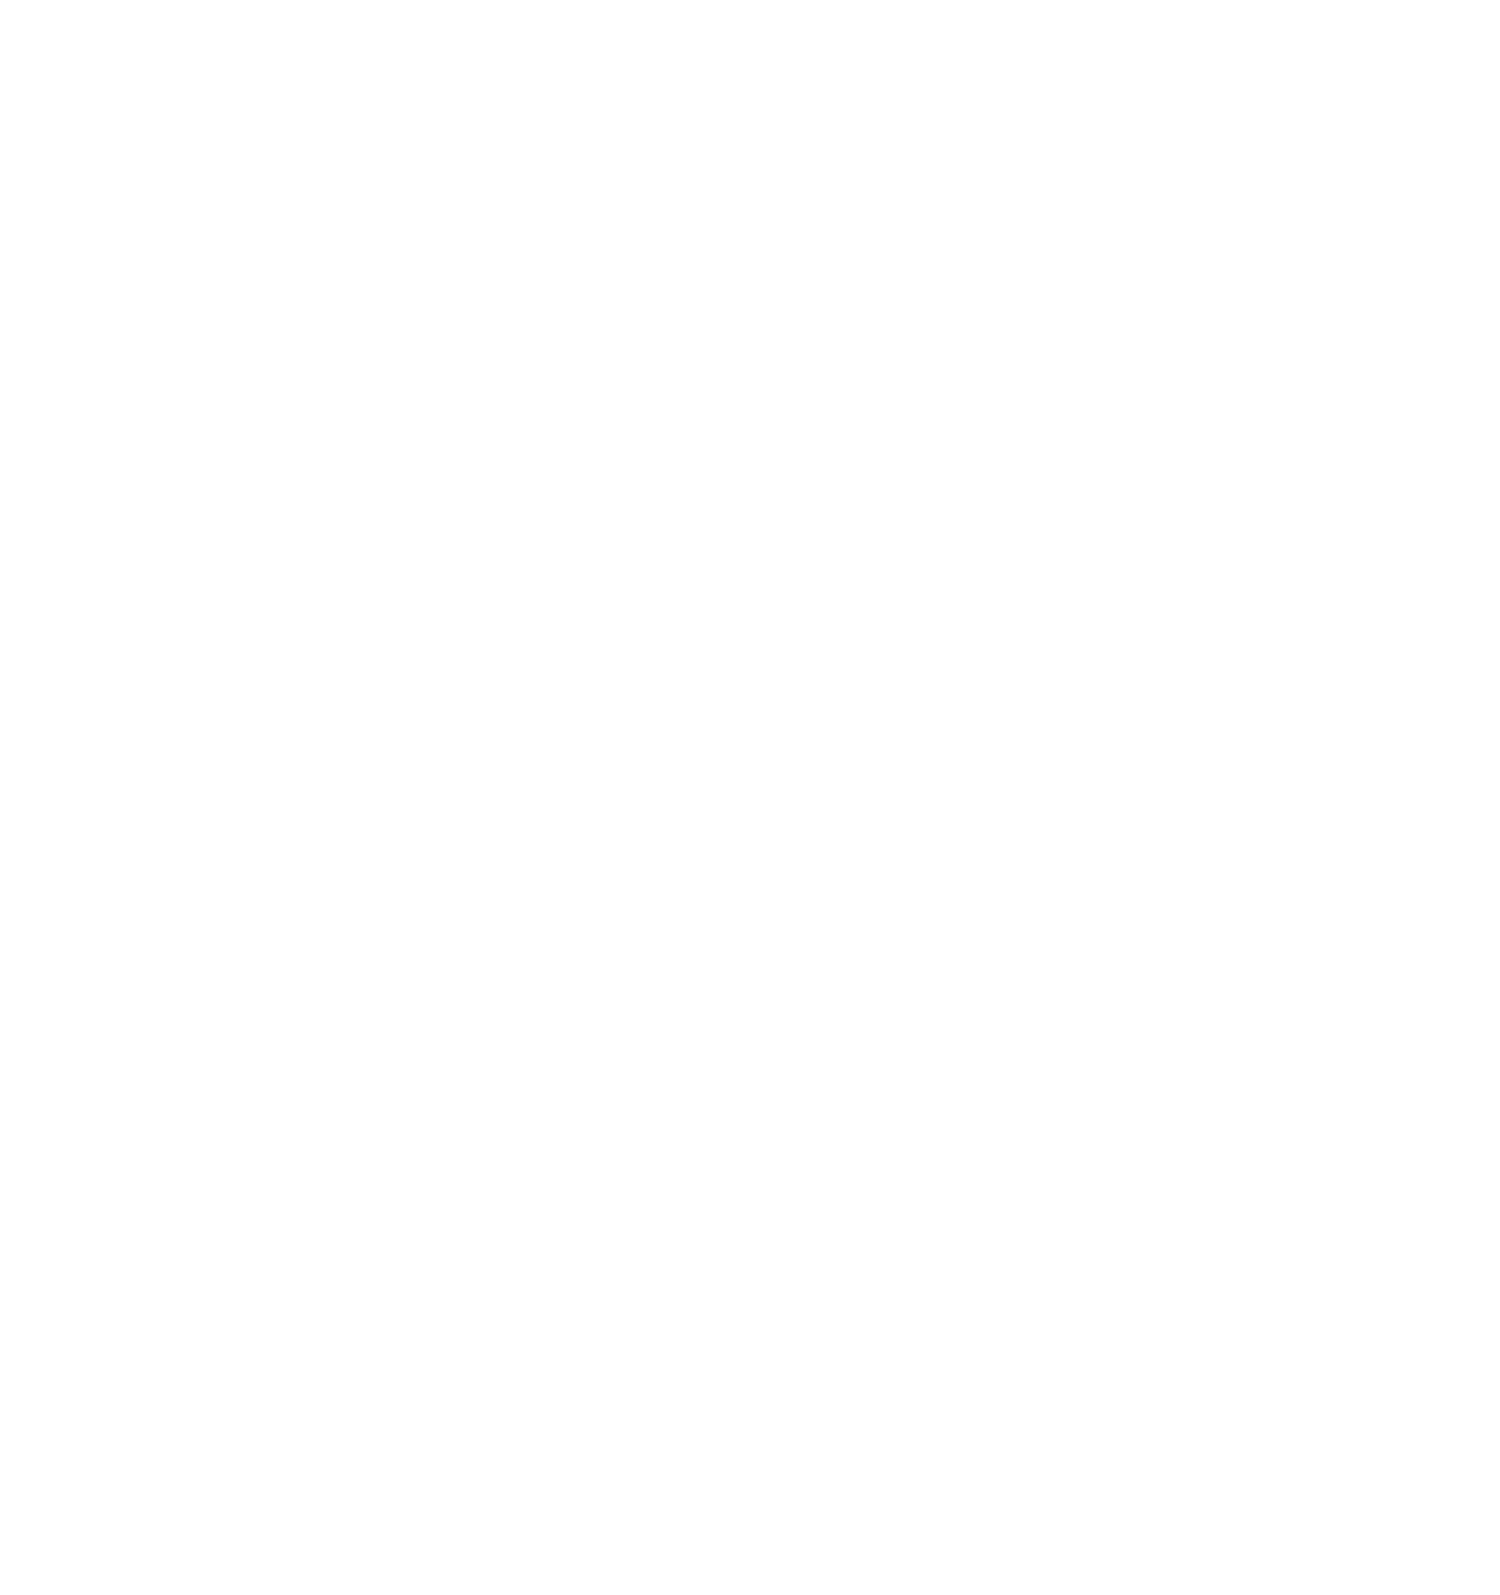 Nurture Consulting